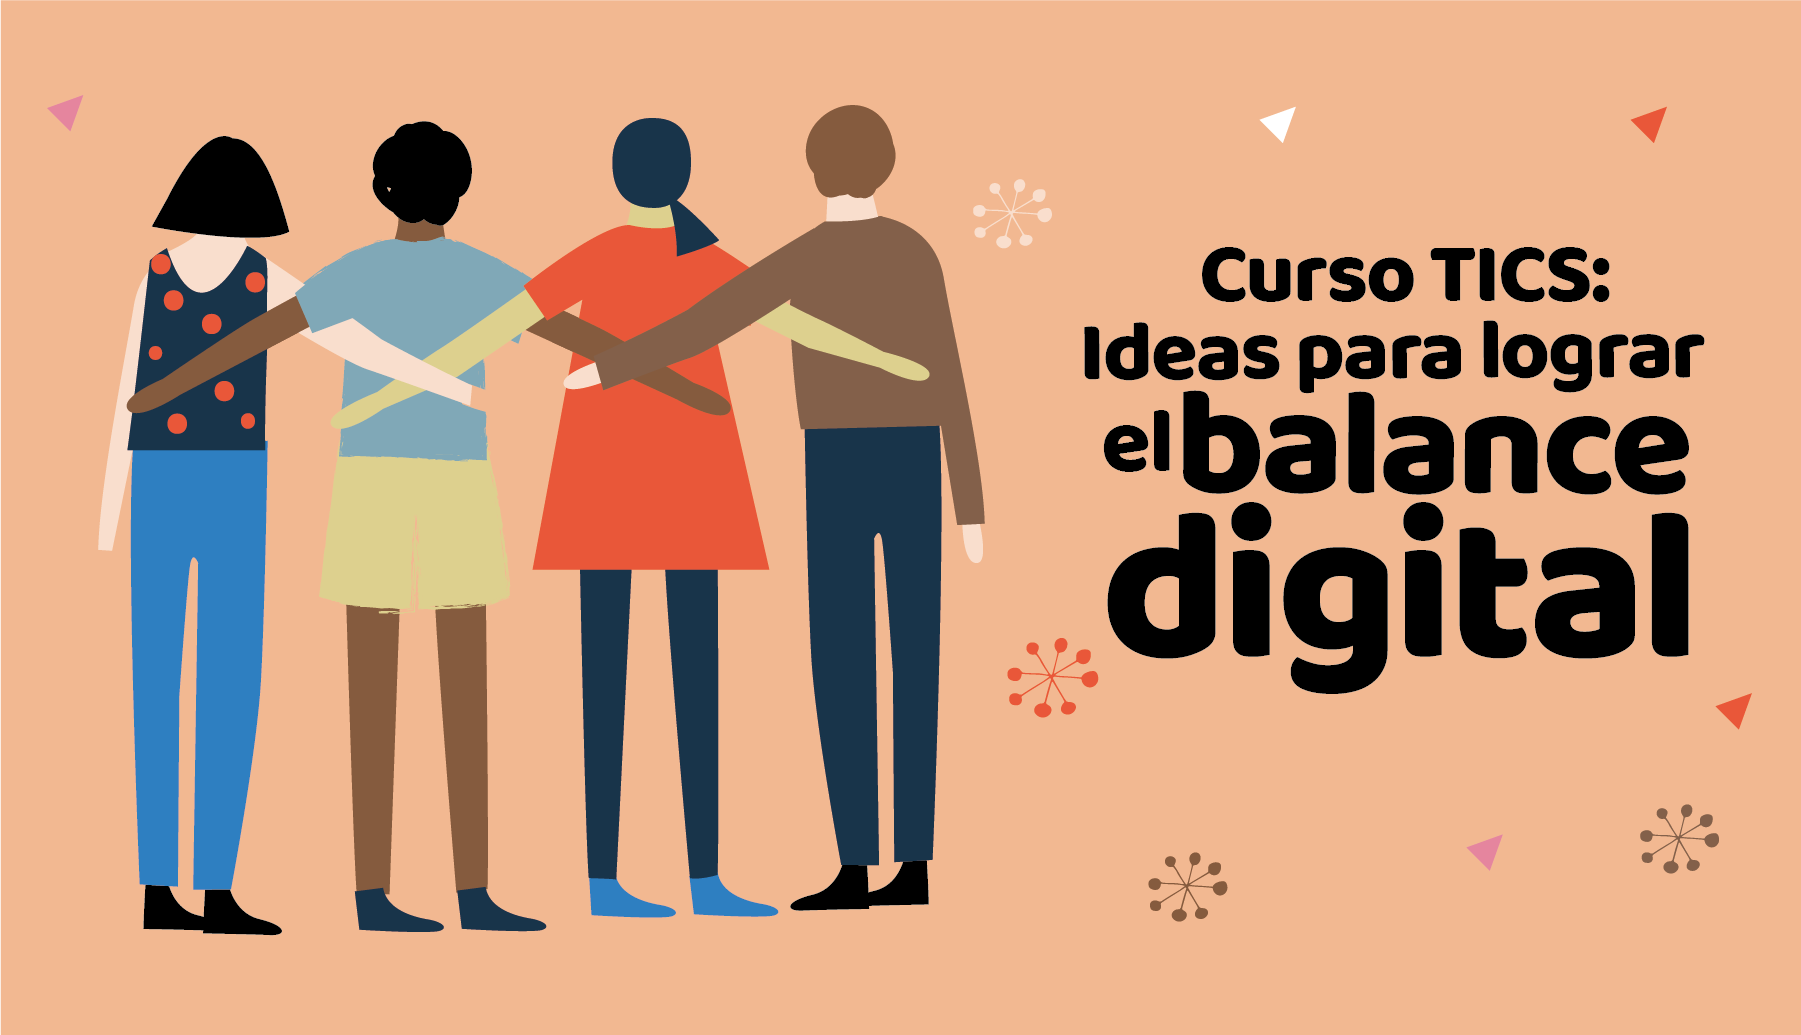 Curso TICS: Ideas para lograr el balance digital